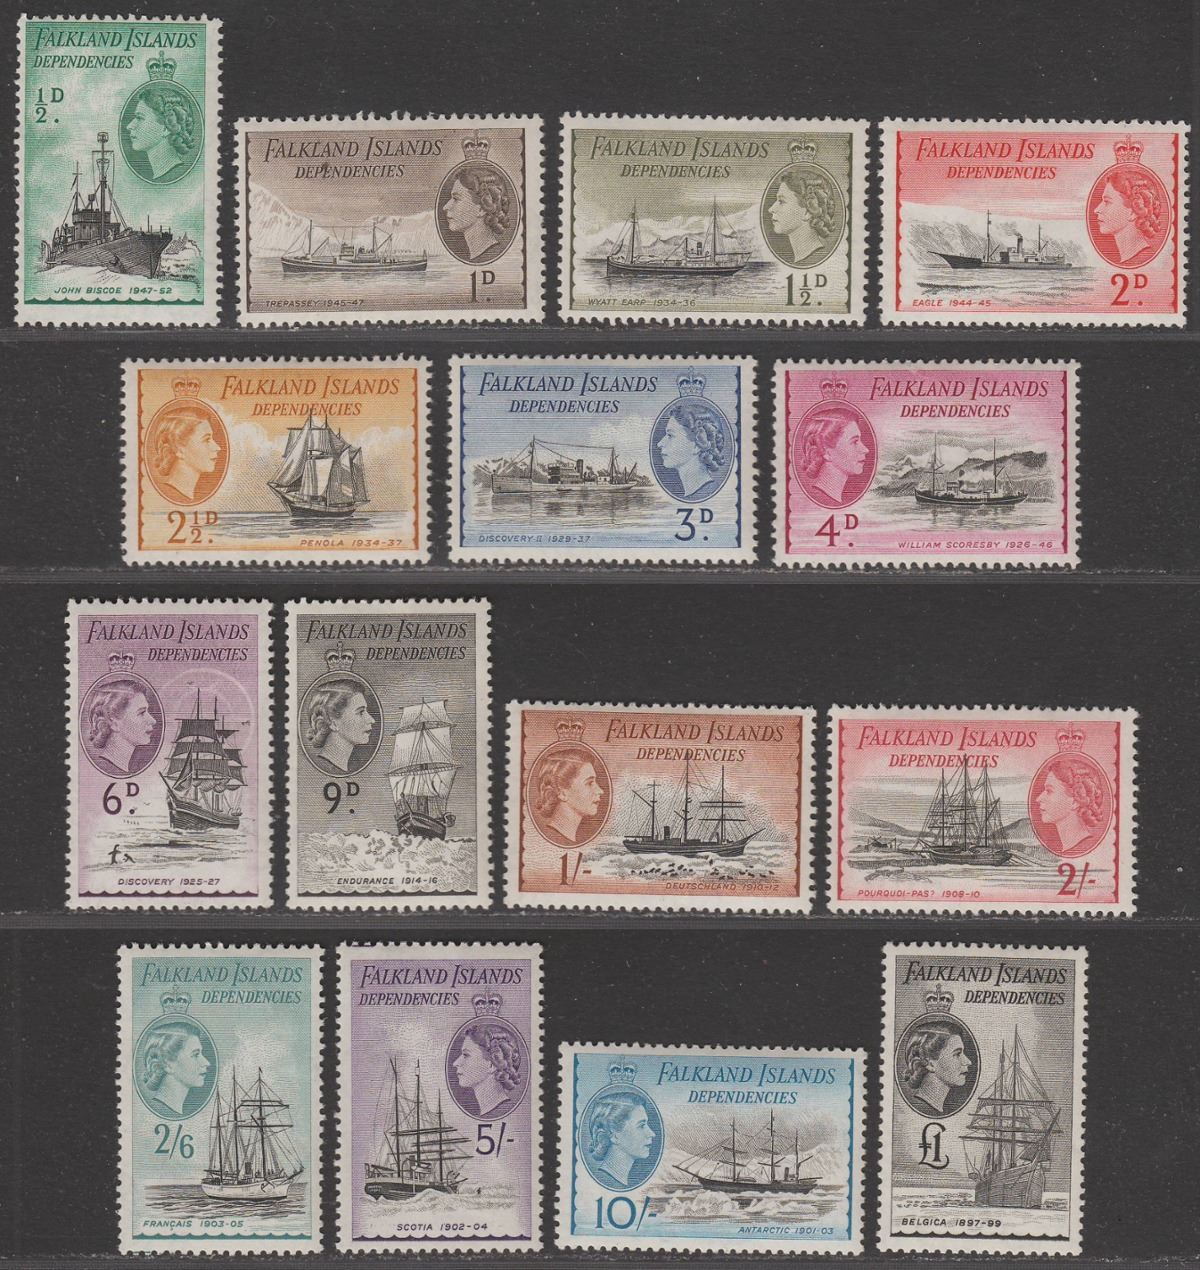 Falkland Islands Dependencies 1954 QEII Ships Set Mint SG G26-G40 cat £225